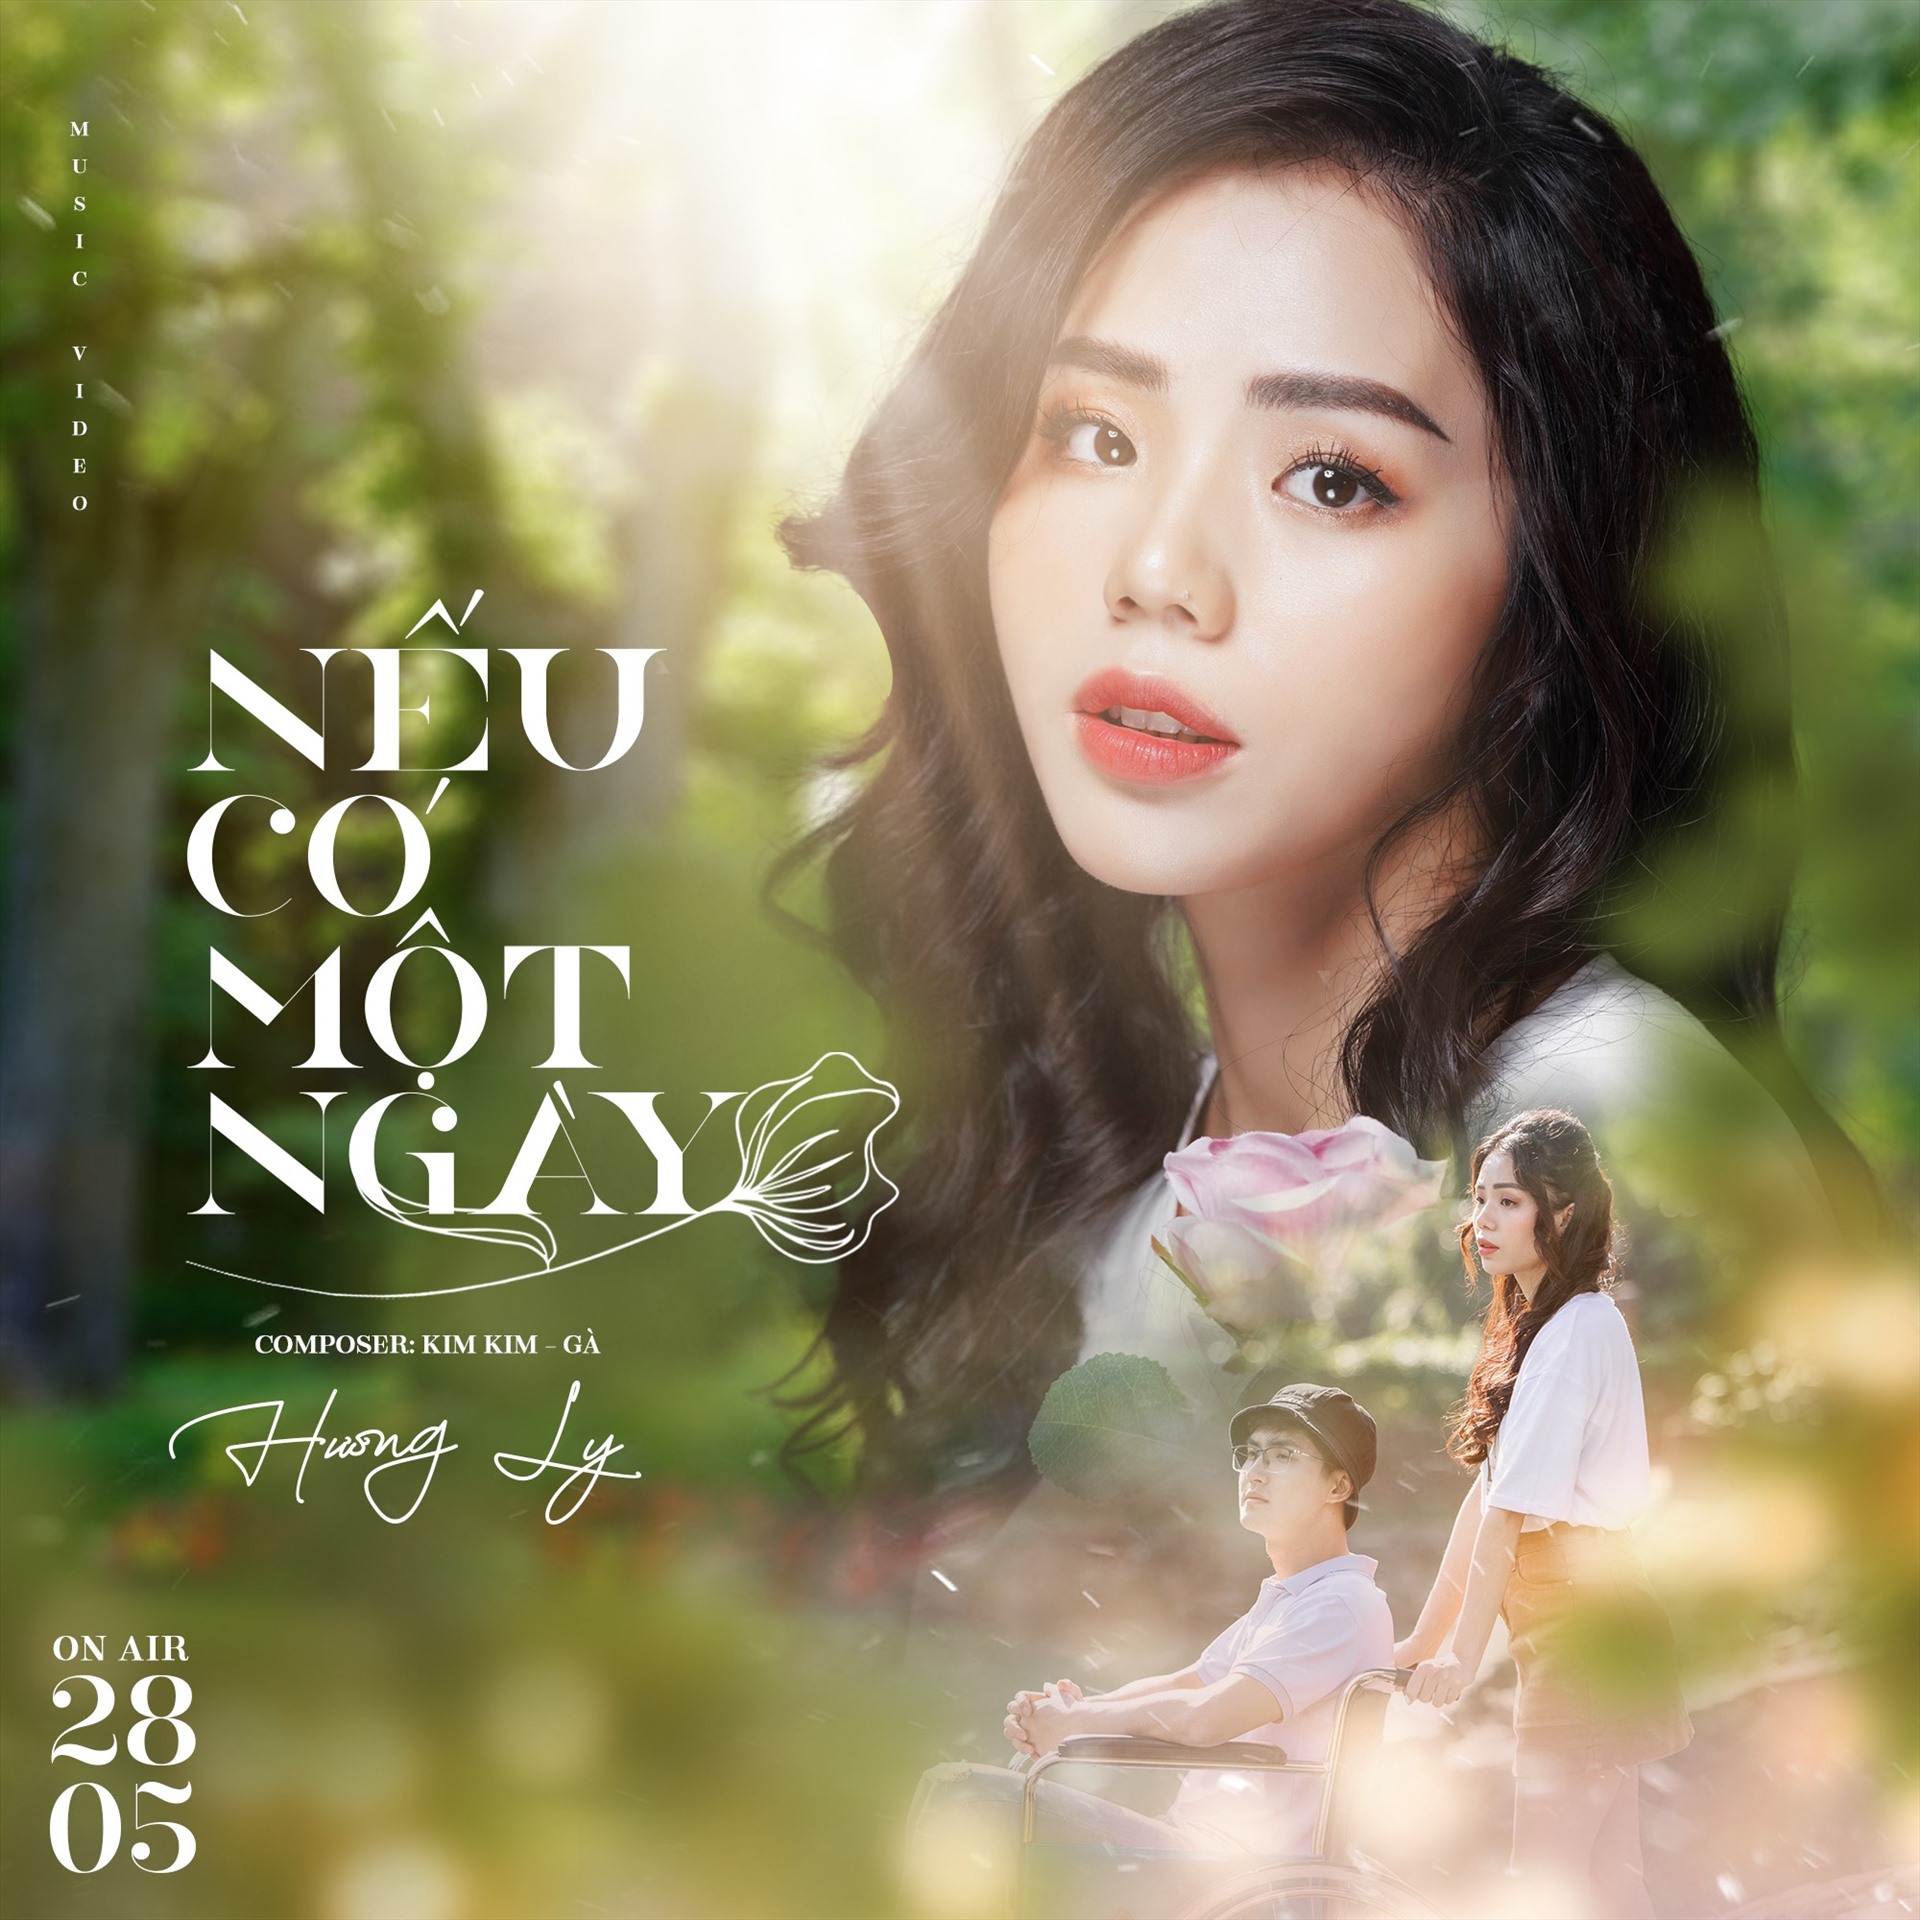 Hương Ly lần đầu làm diễn viên chính trong MV “Nếu có một ngày“. Ảnh: Nguyễn Hương Ly